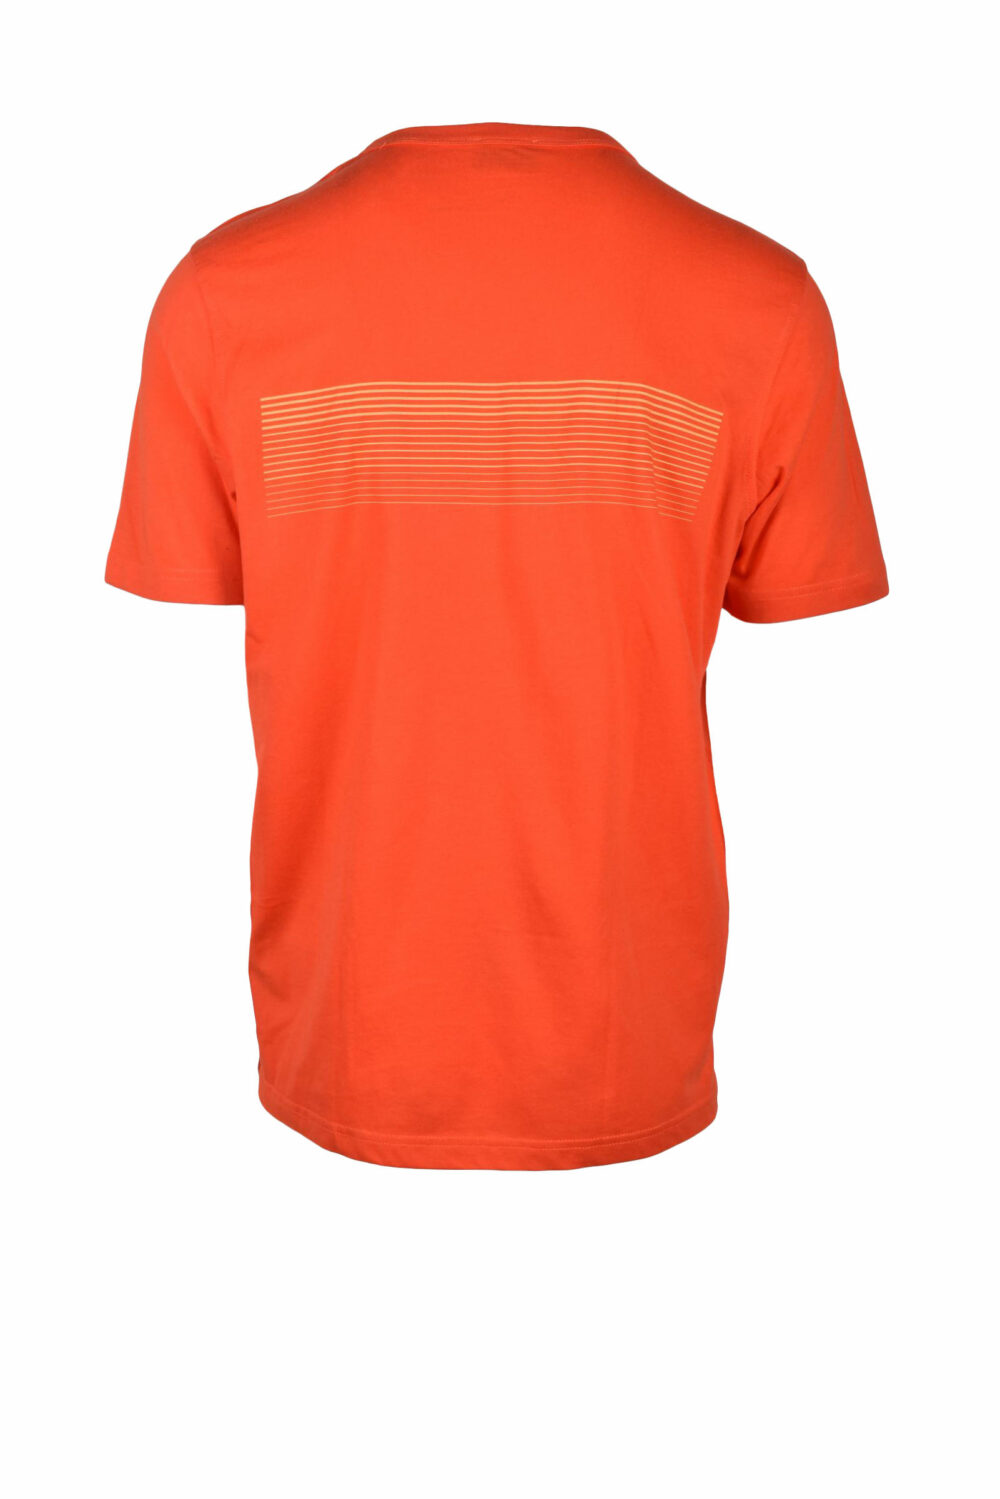 T-shirt Diesel Arancione - Foto 2